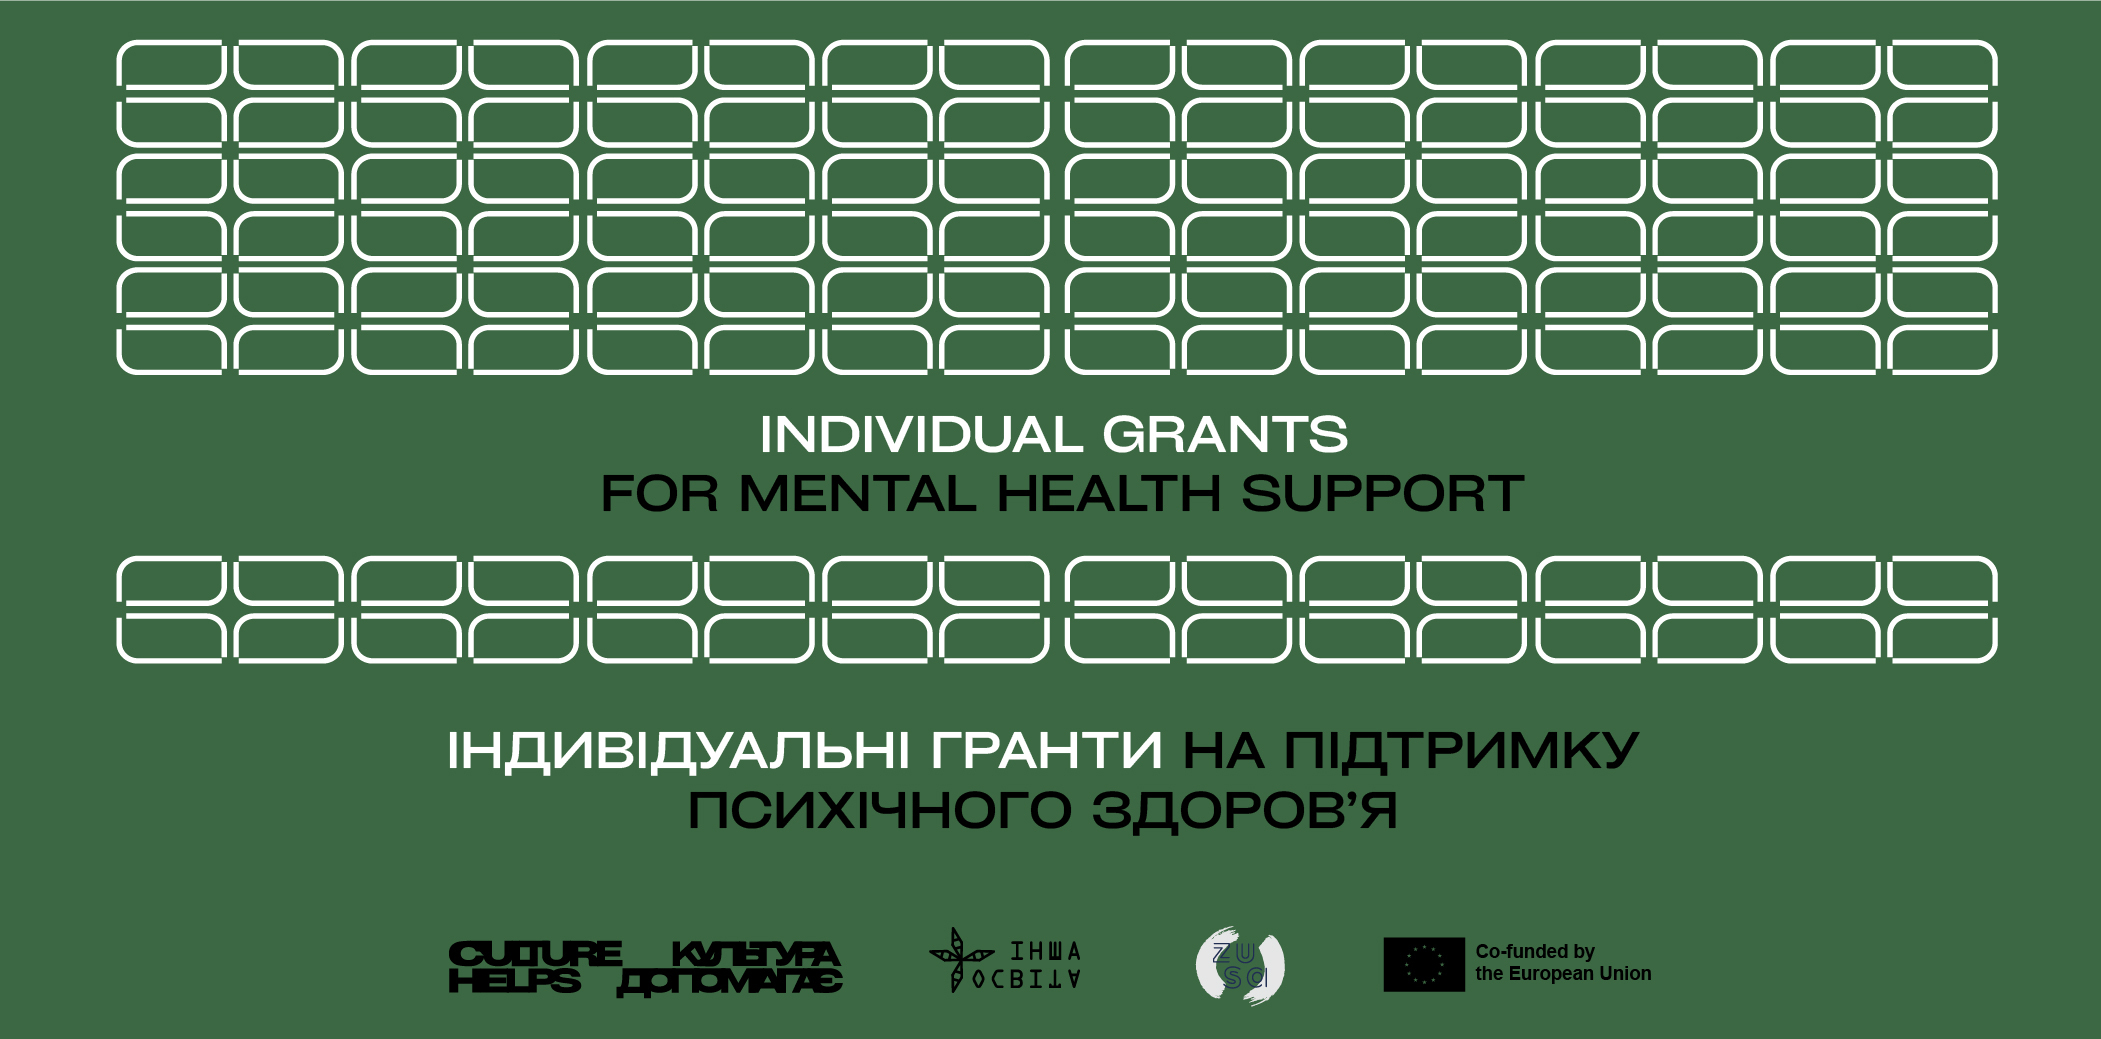 «Culture Helps / Культура допомагає»: індивідуальні гранти на підтримку психічного здоров’я до 1000 євро